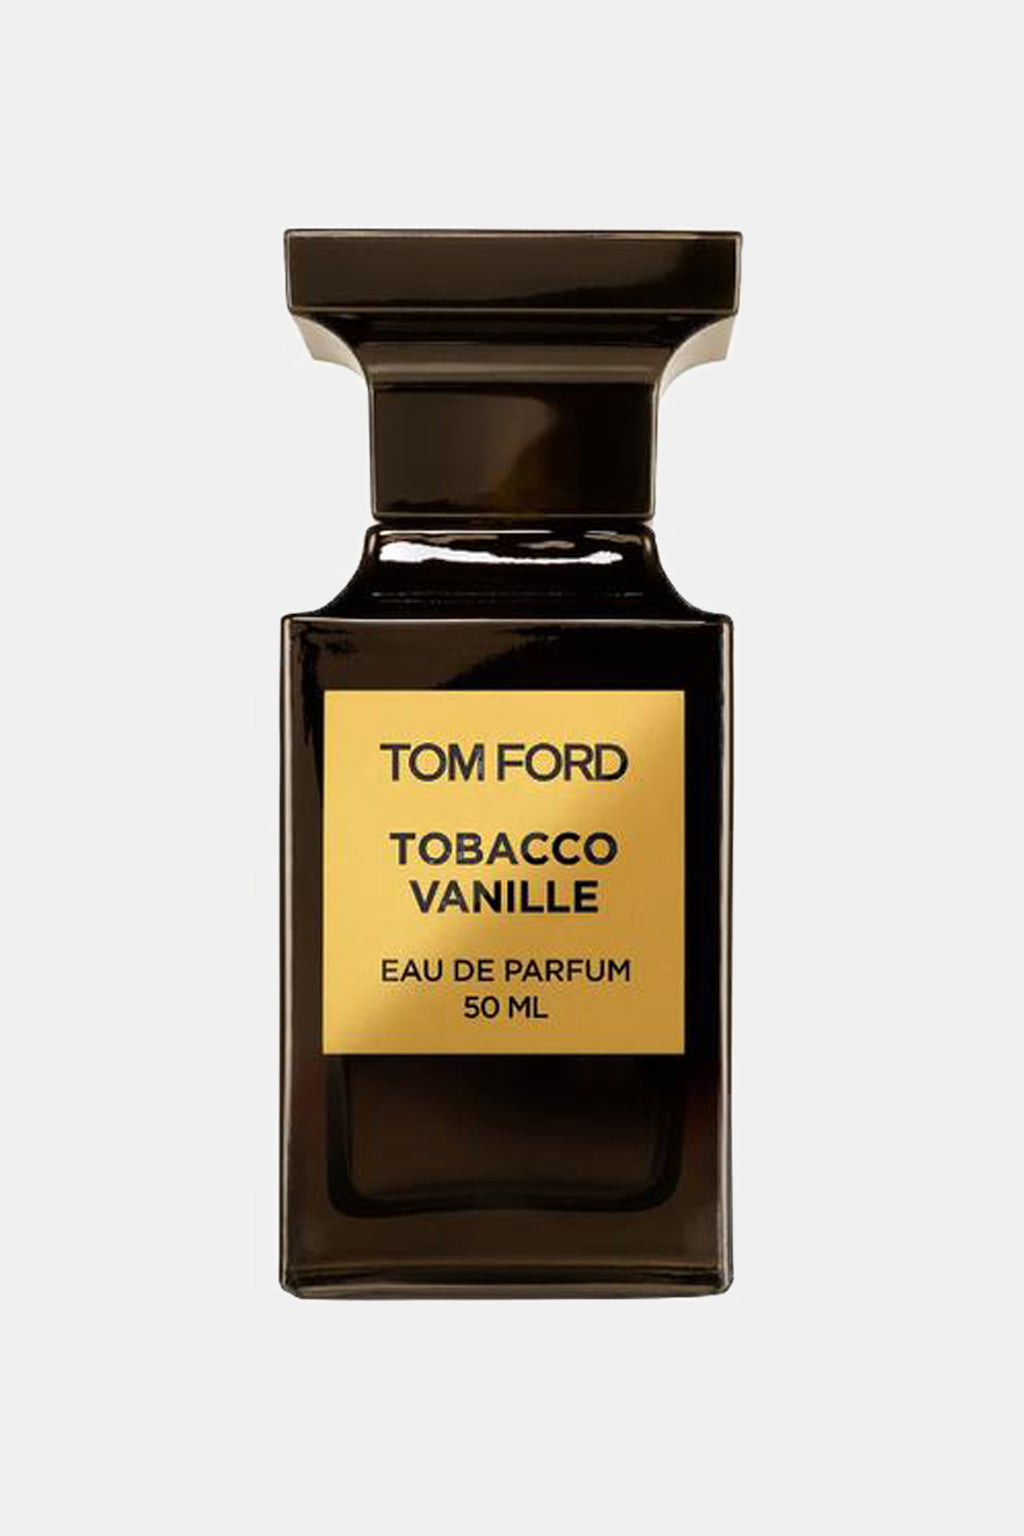 Tom Ford - Tobacco Vanille Eau de Parfum